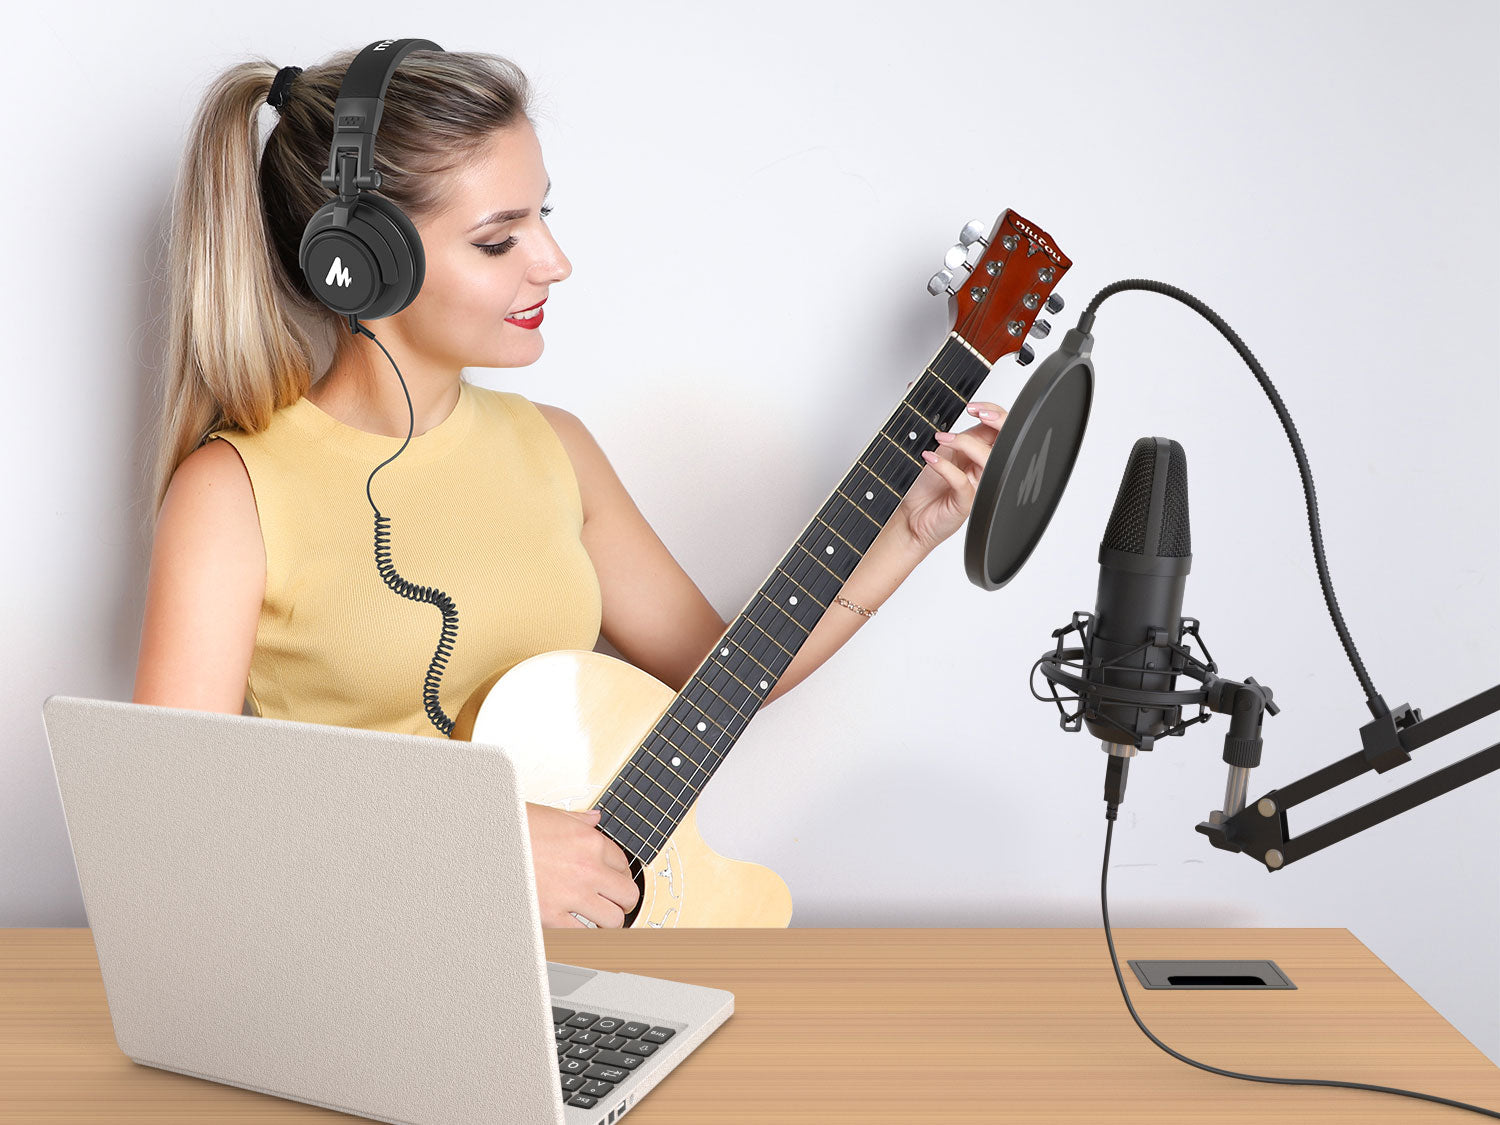 Mousse acoustique insonorisante Podcast anti-bruit pour les studios  d'enregistrement